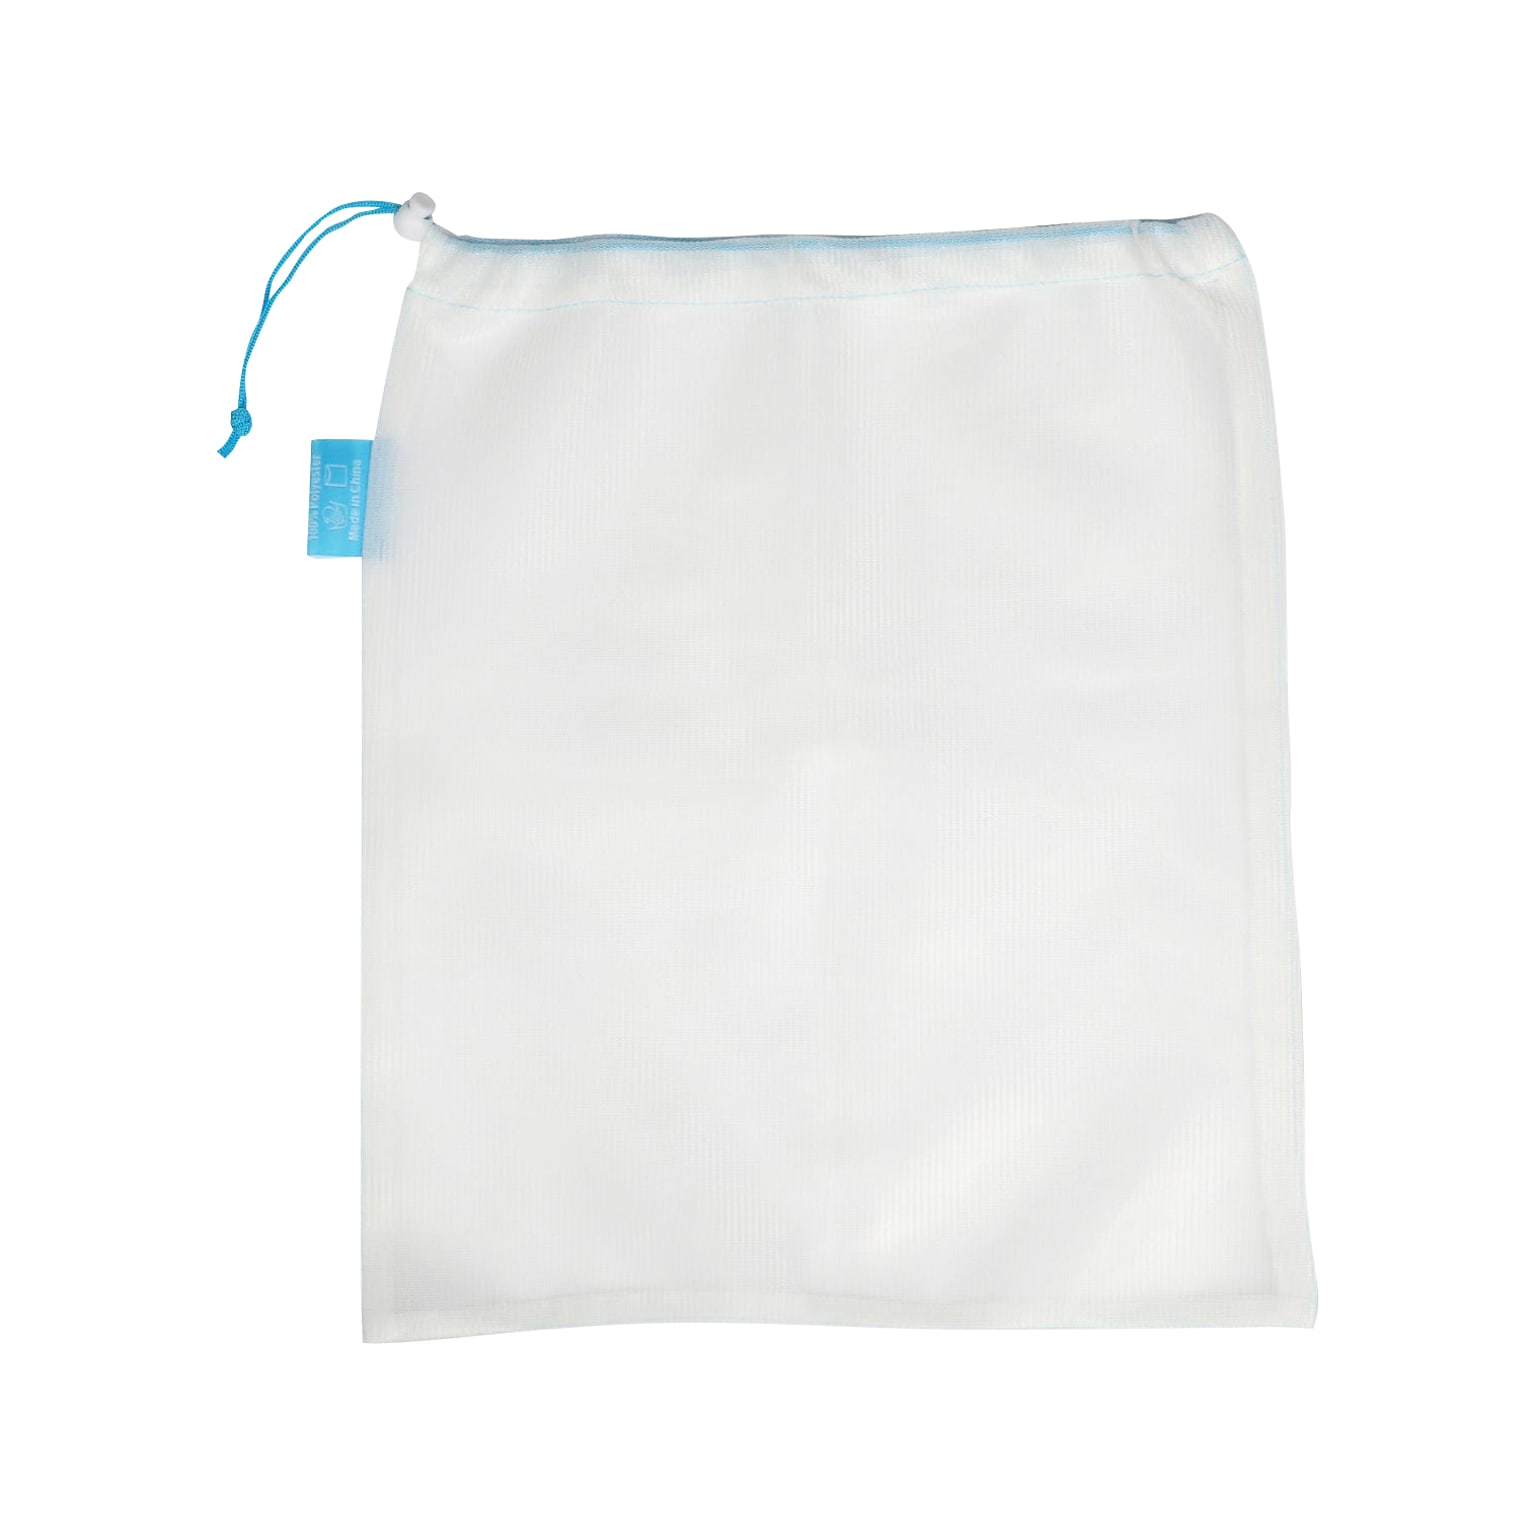 Learning Resources Mesh Washing Bag, White, 5/Pack (LER 4365)